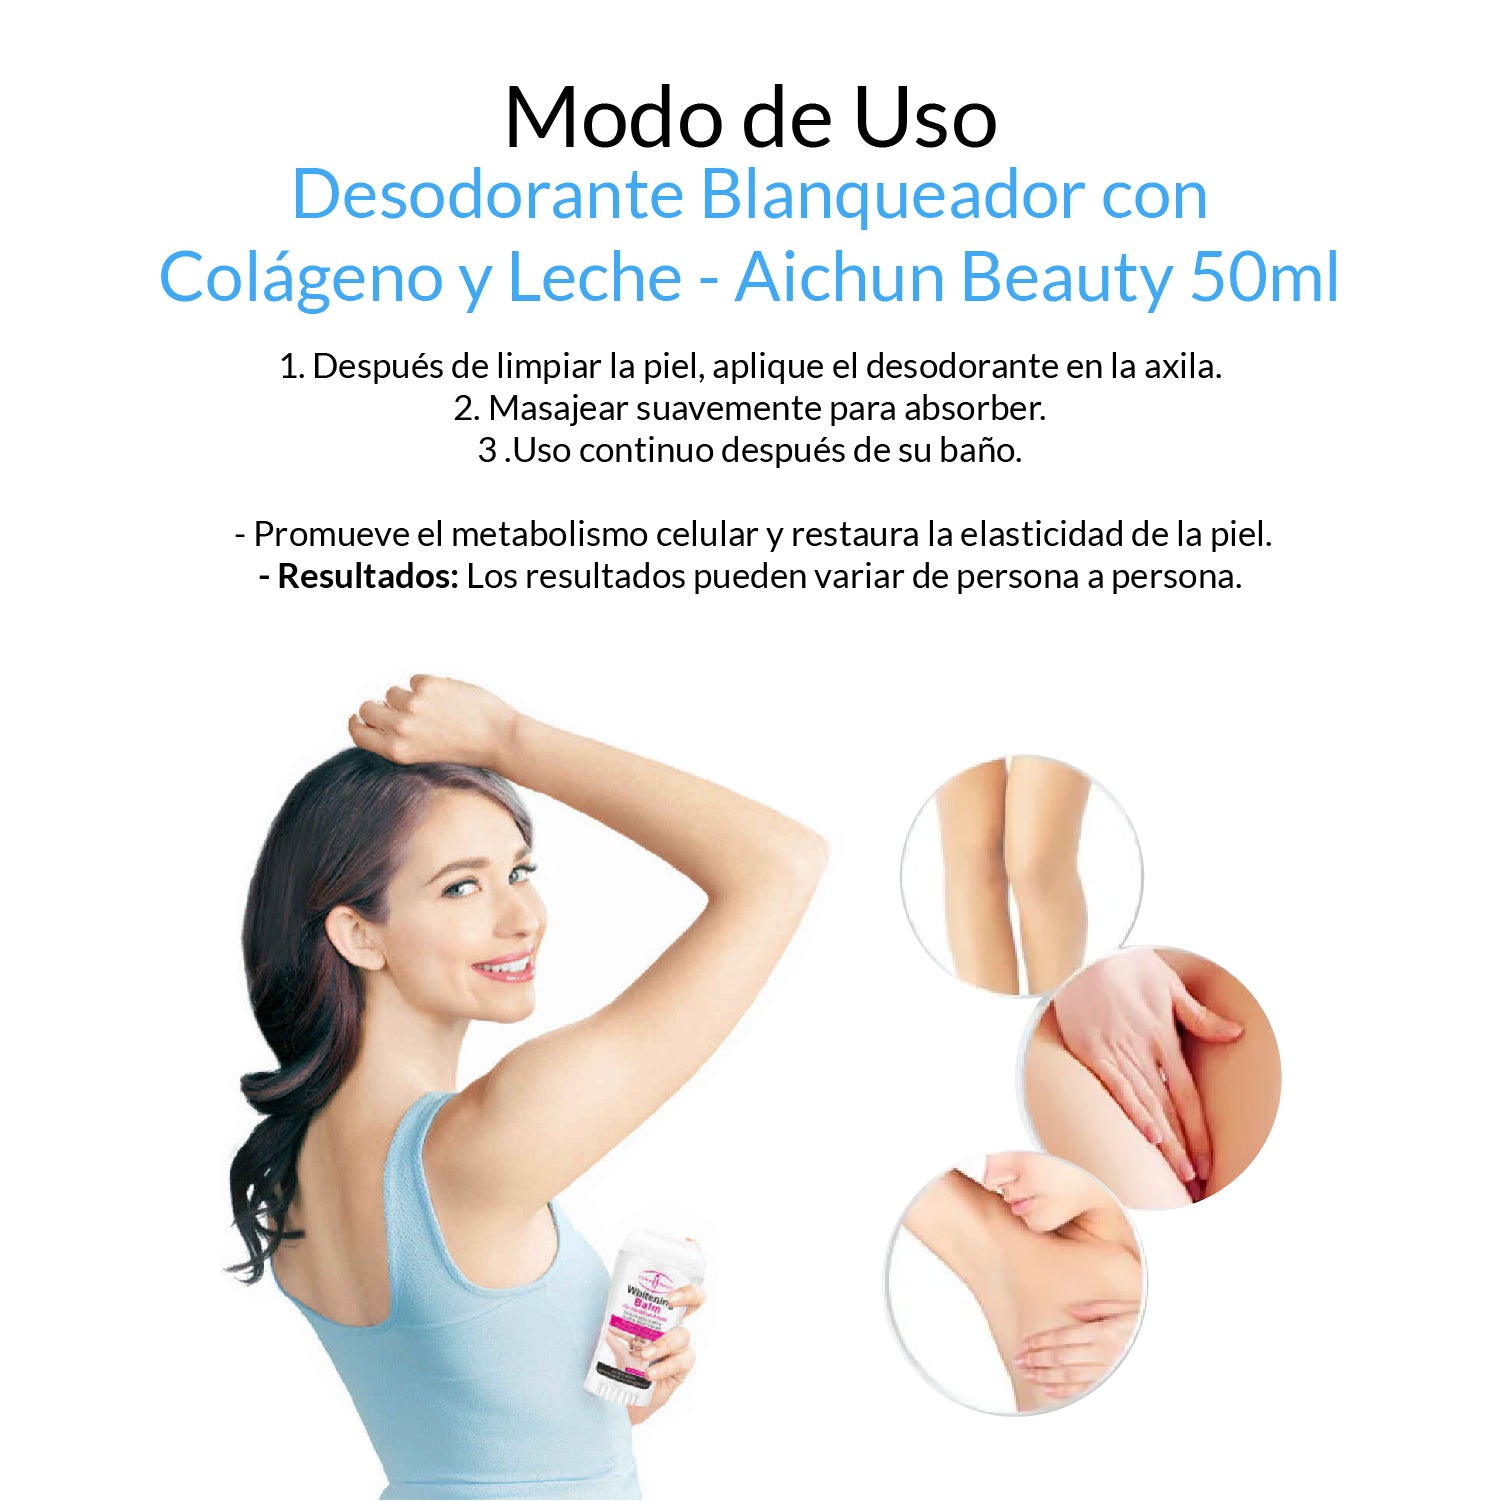 Desodorante Blanqueador con Colágeno y Leche - Aichun Beauty 50ml